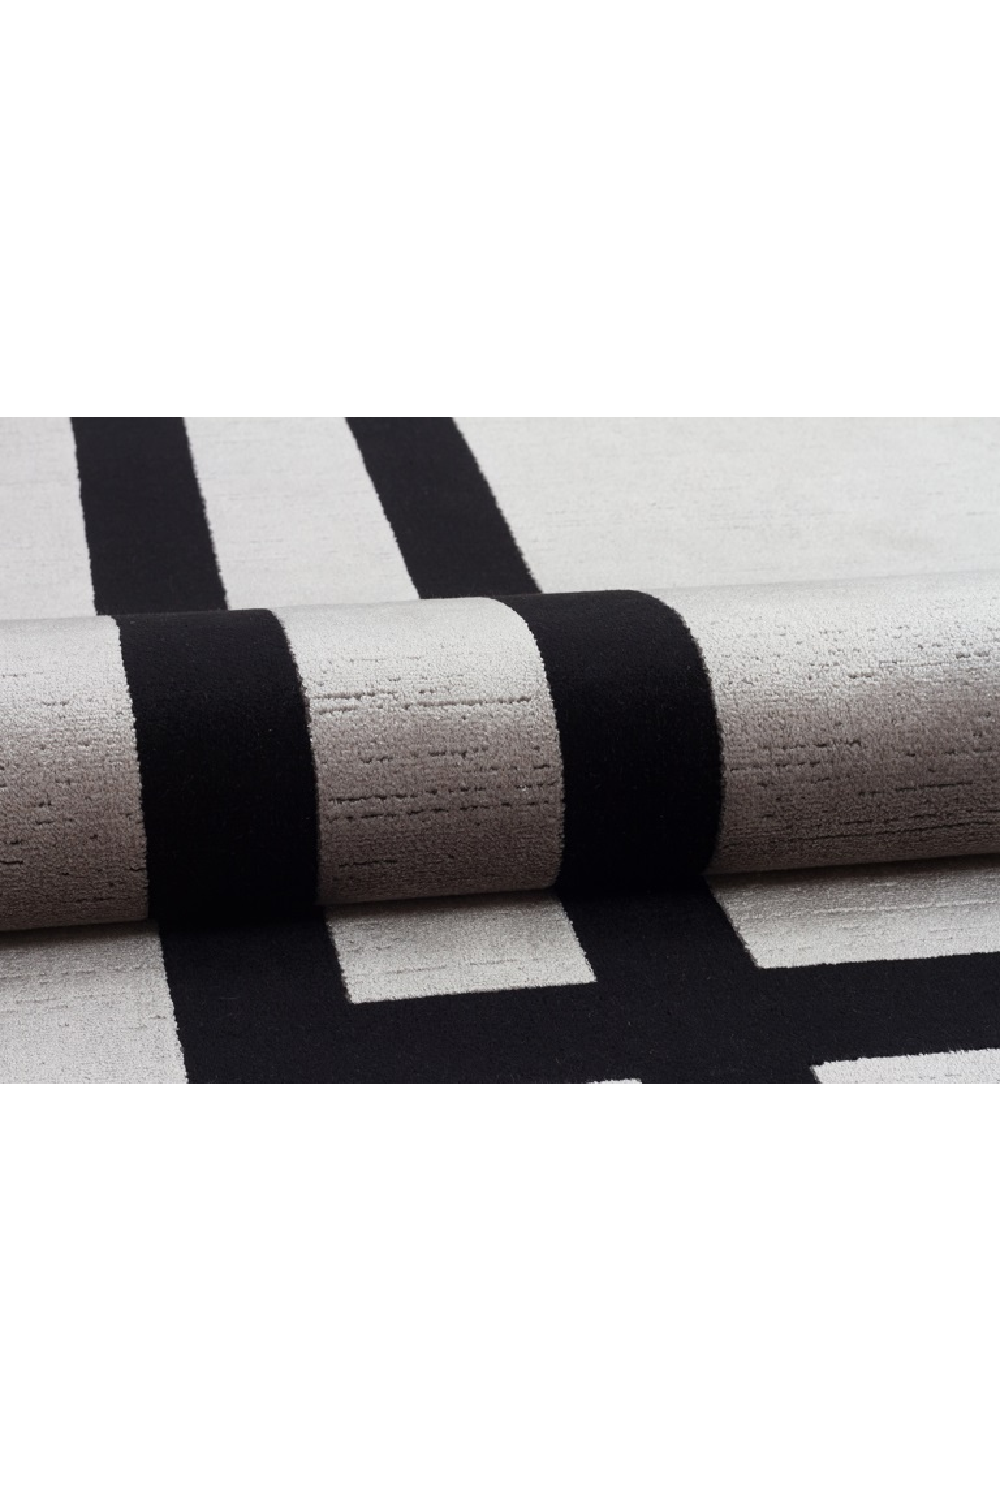 Gray Viscose Contemporary Rug 6'5" x 10 | OROA Tula | Oroa.com